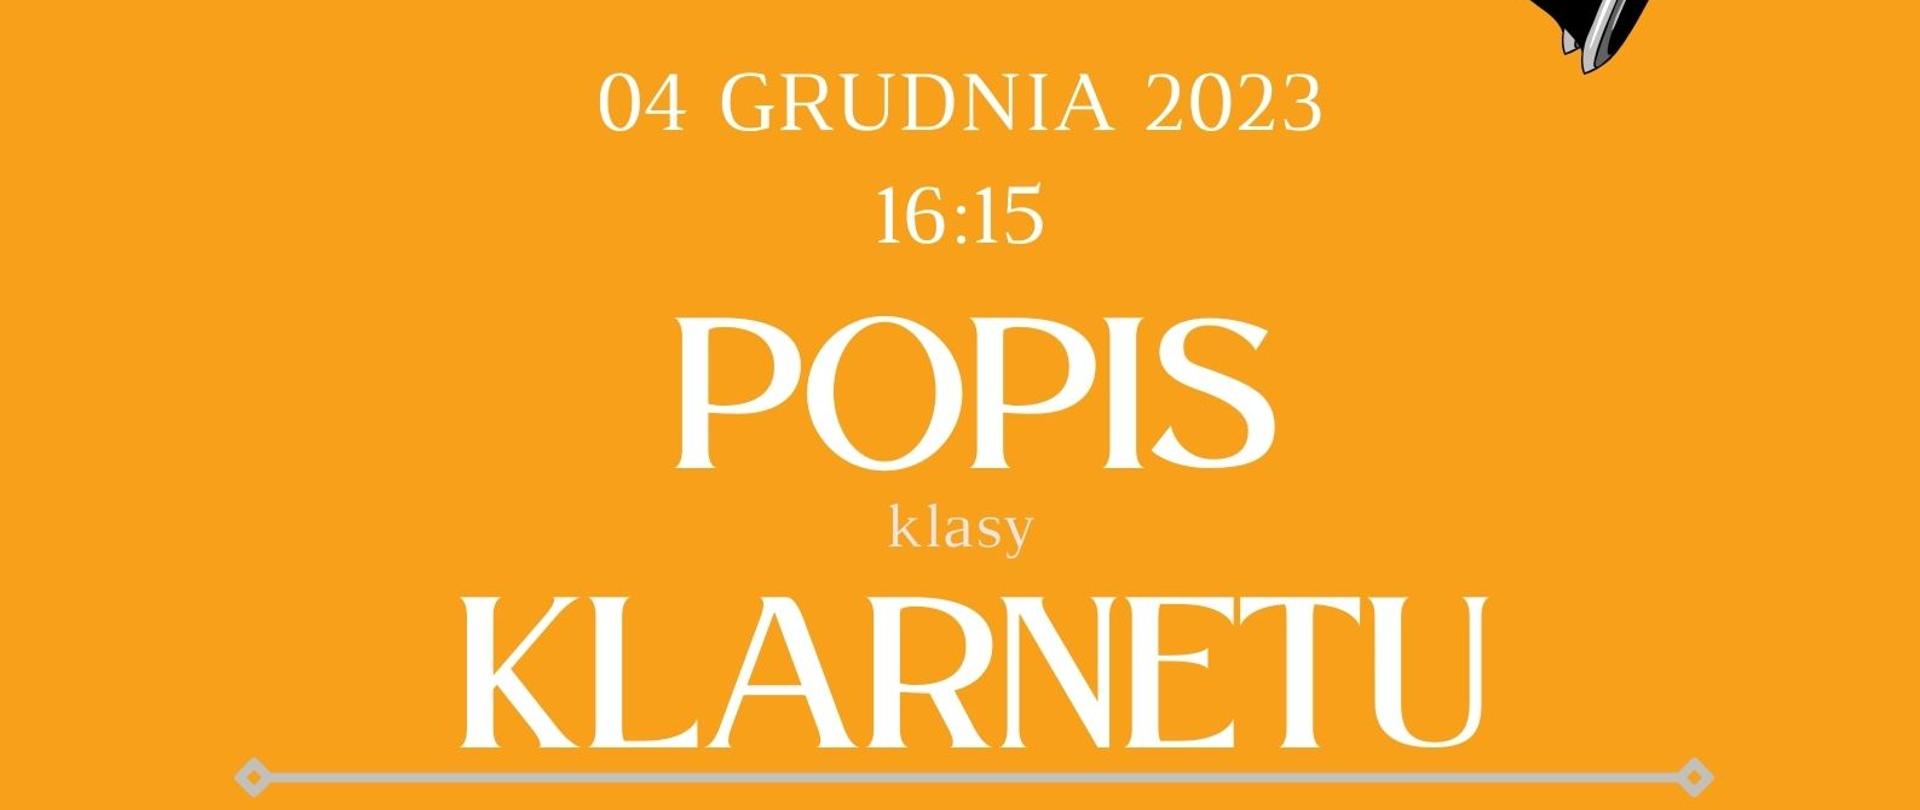 Plakat informacyjny dotyczący popisu klasy klarnetu odbywającego się w dniu 01.12.2023 r. o godz. 16.00.